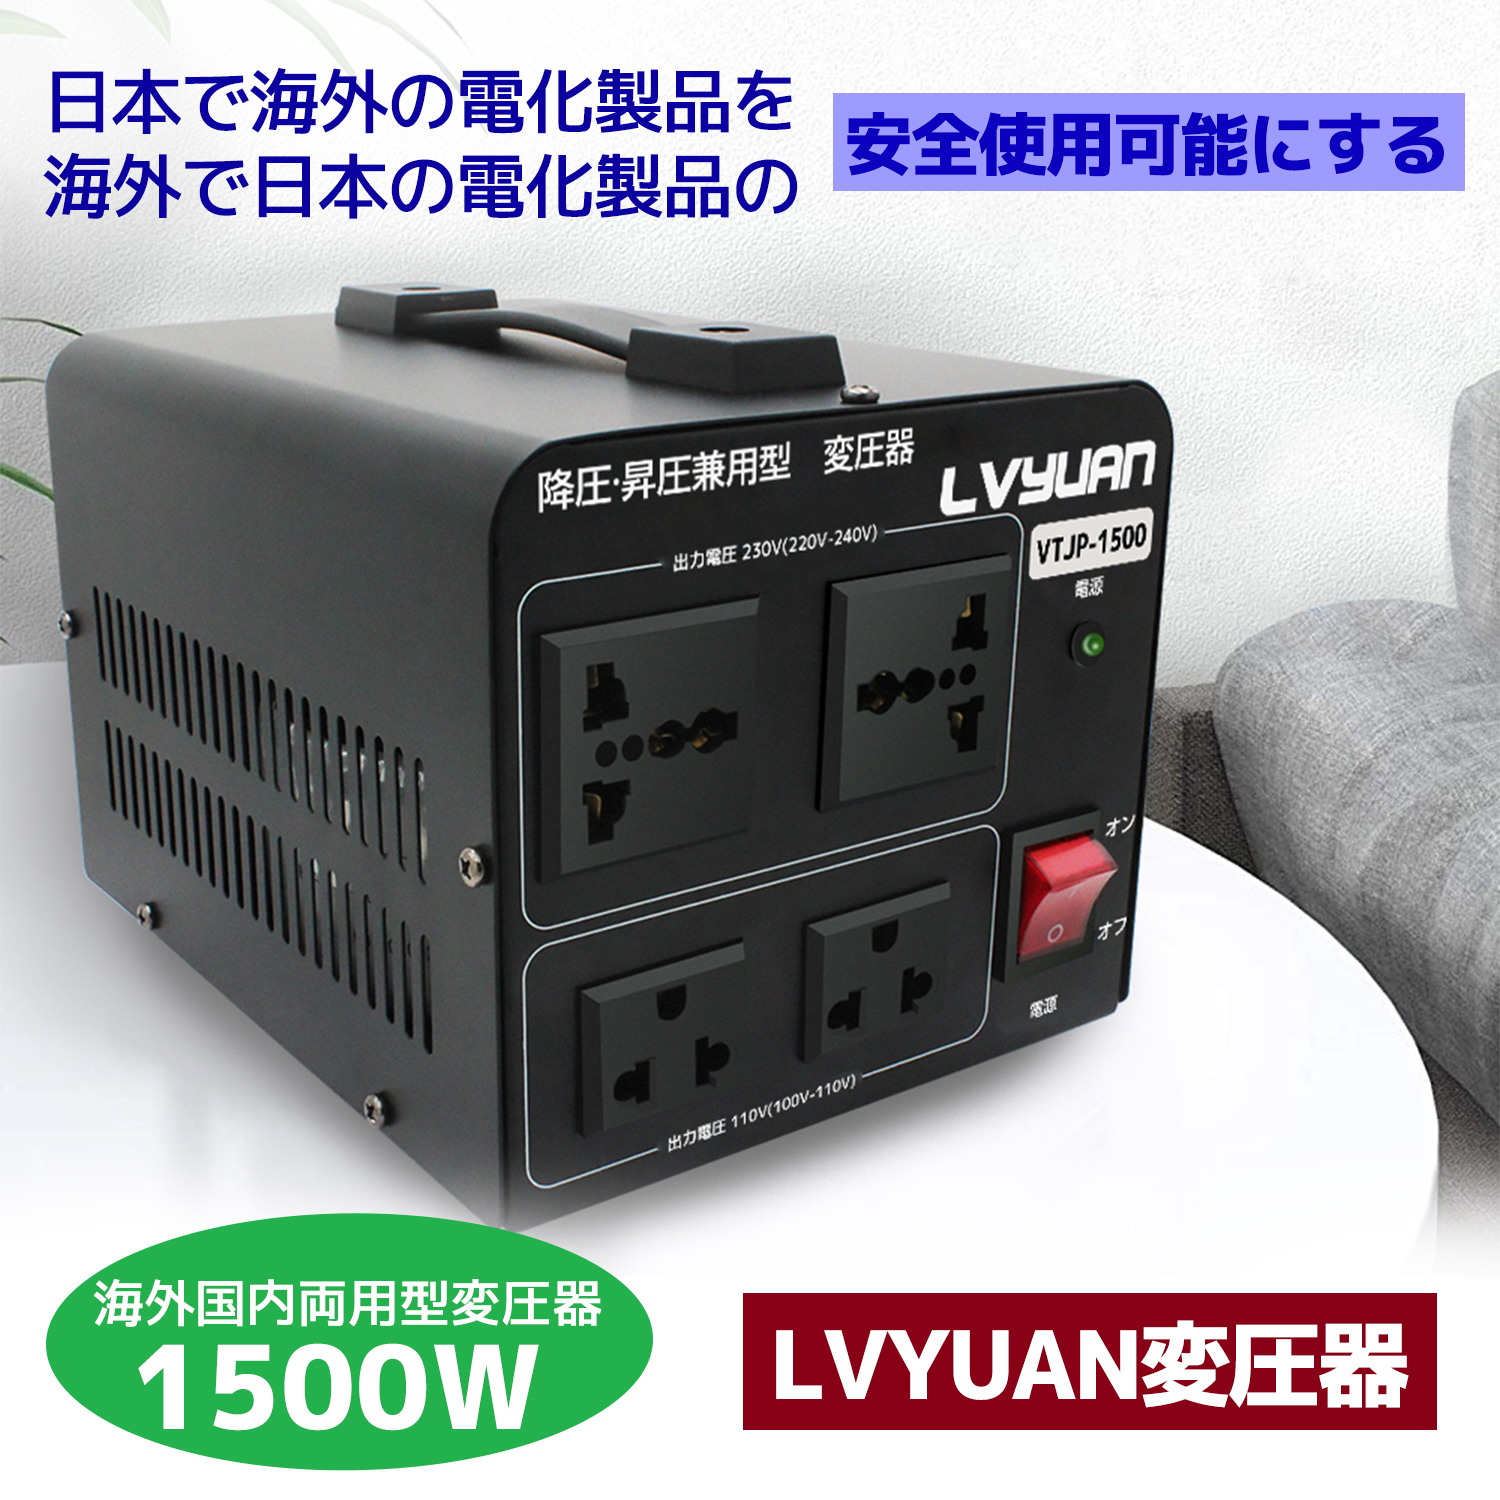 海外国内両用型変圧器 1500W アップトランス ダウントランス 降圧 昇圧